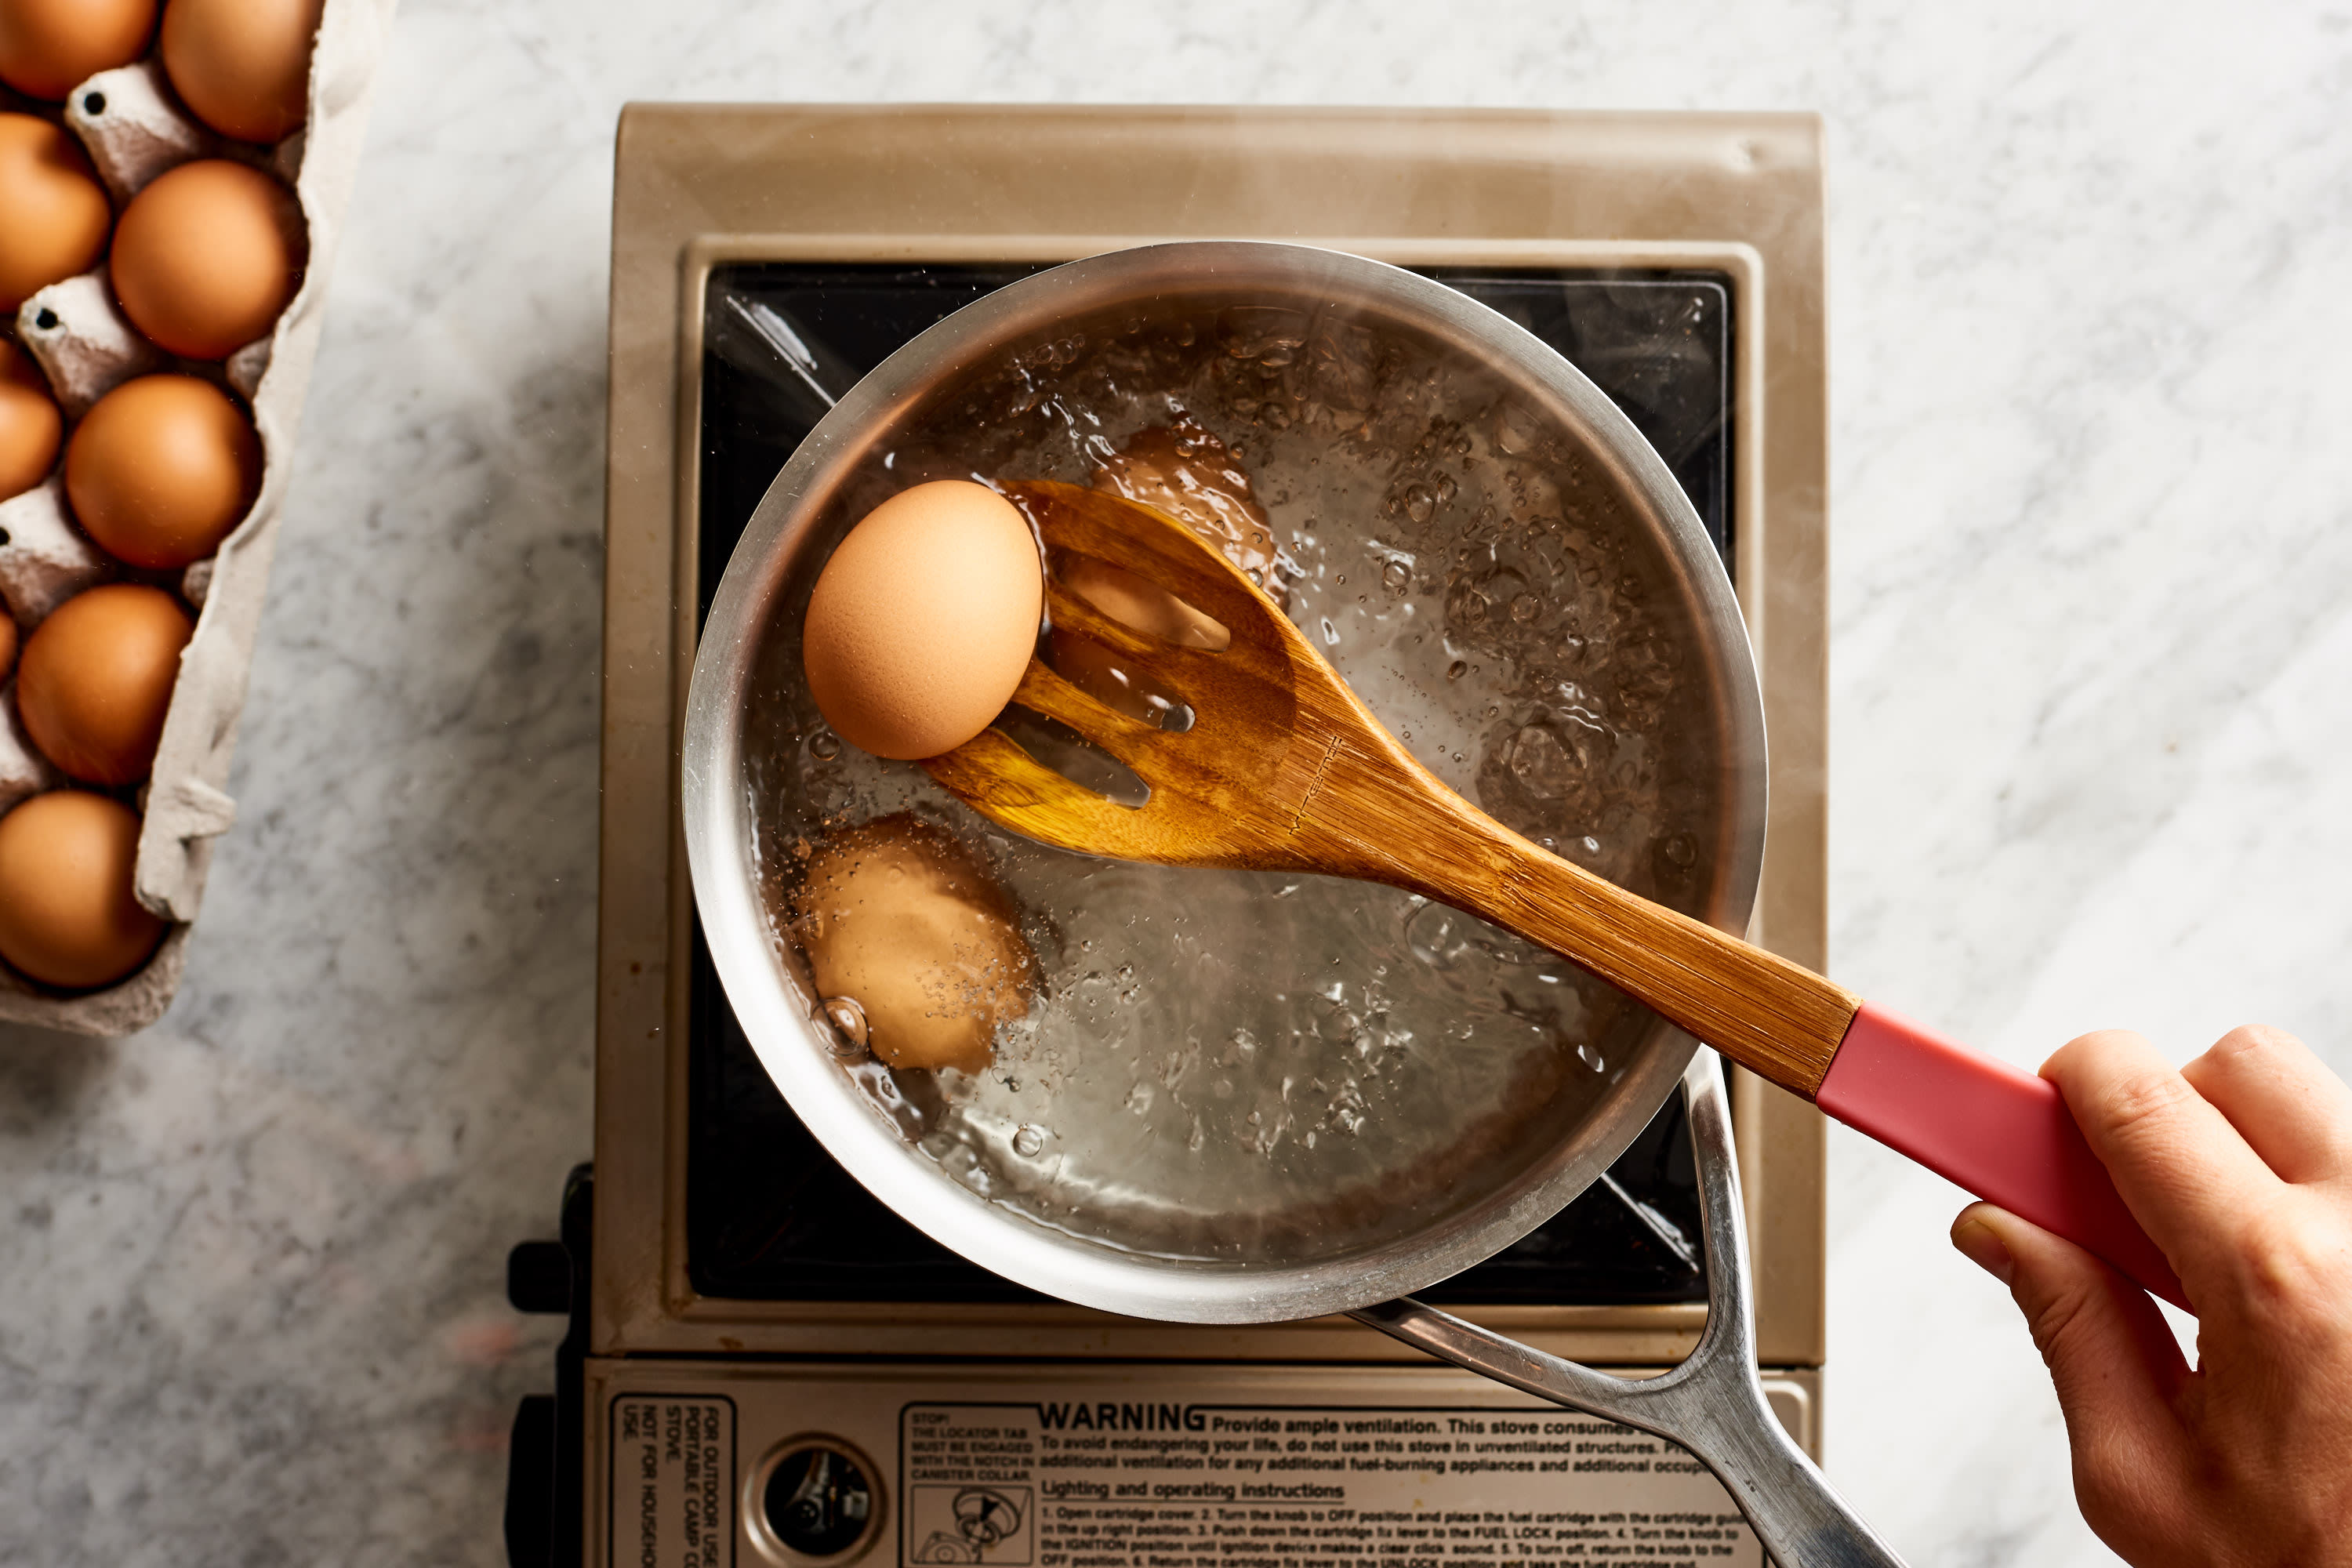 https://cdn.apartmenttherapy.info/image/upload/v1566508535/k/Photo/Series/2019-09-skills-battle-hard-boiled-eggs/Skills-Battle-Hard-Boil-Eggs_007-Martha-Stewart-Boil-then-Remove.jpg